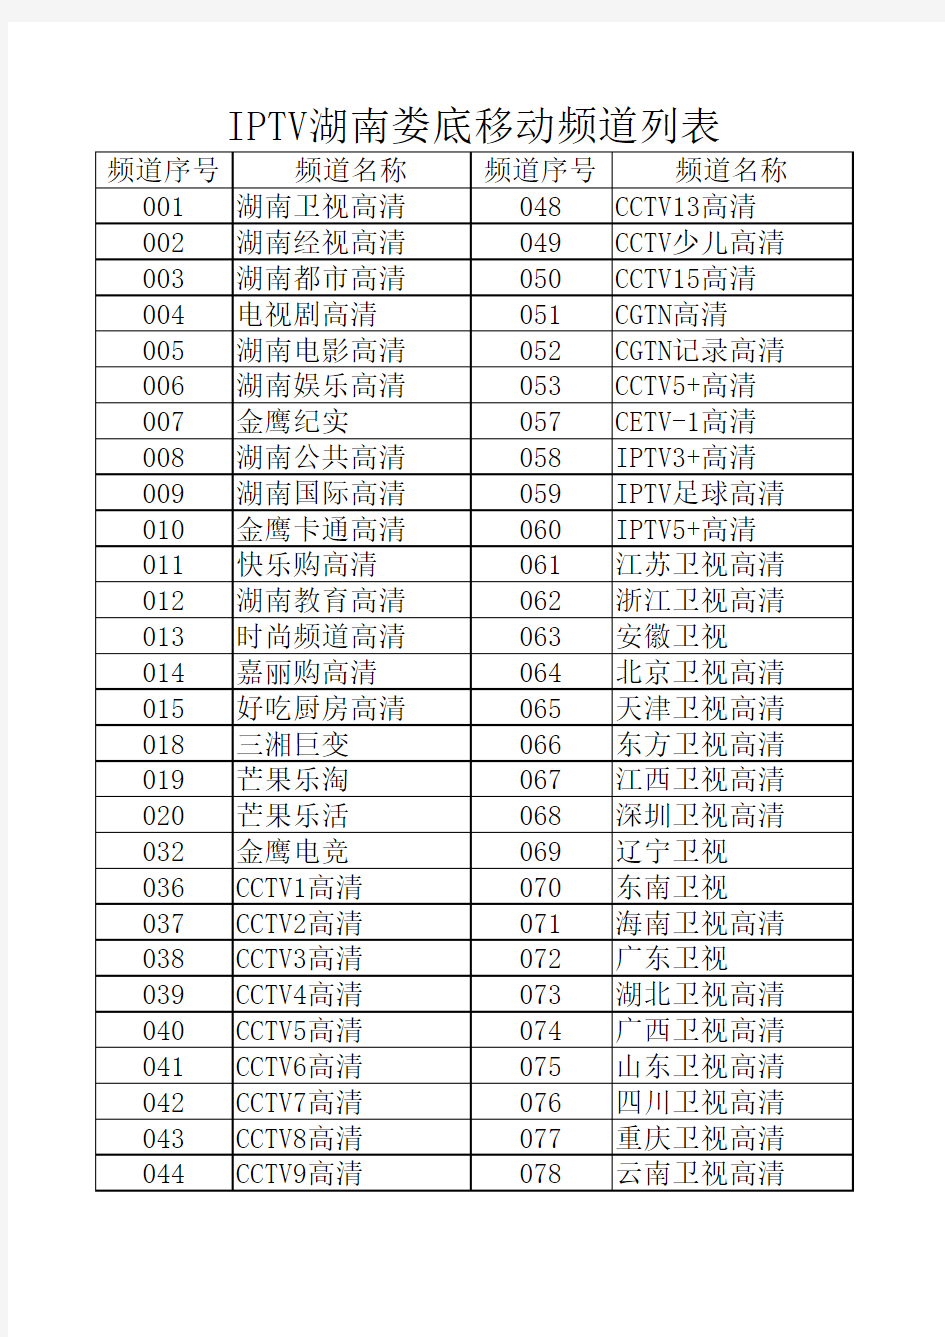 2020年IPTV湖南娄底移动频道列表